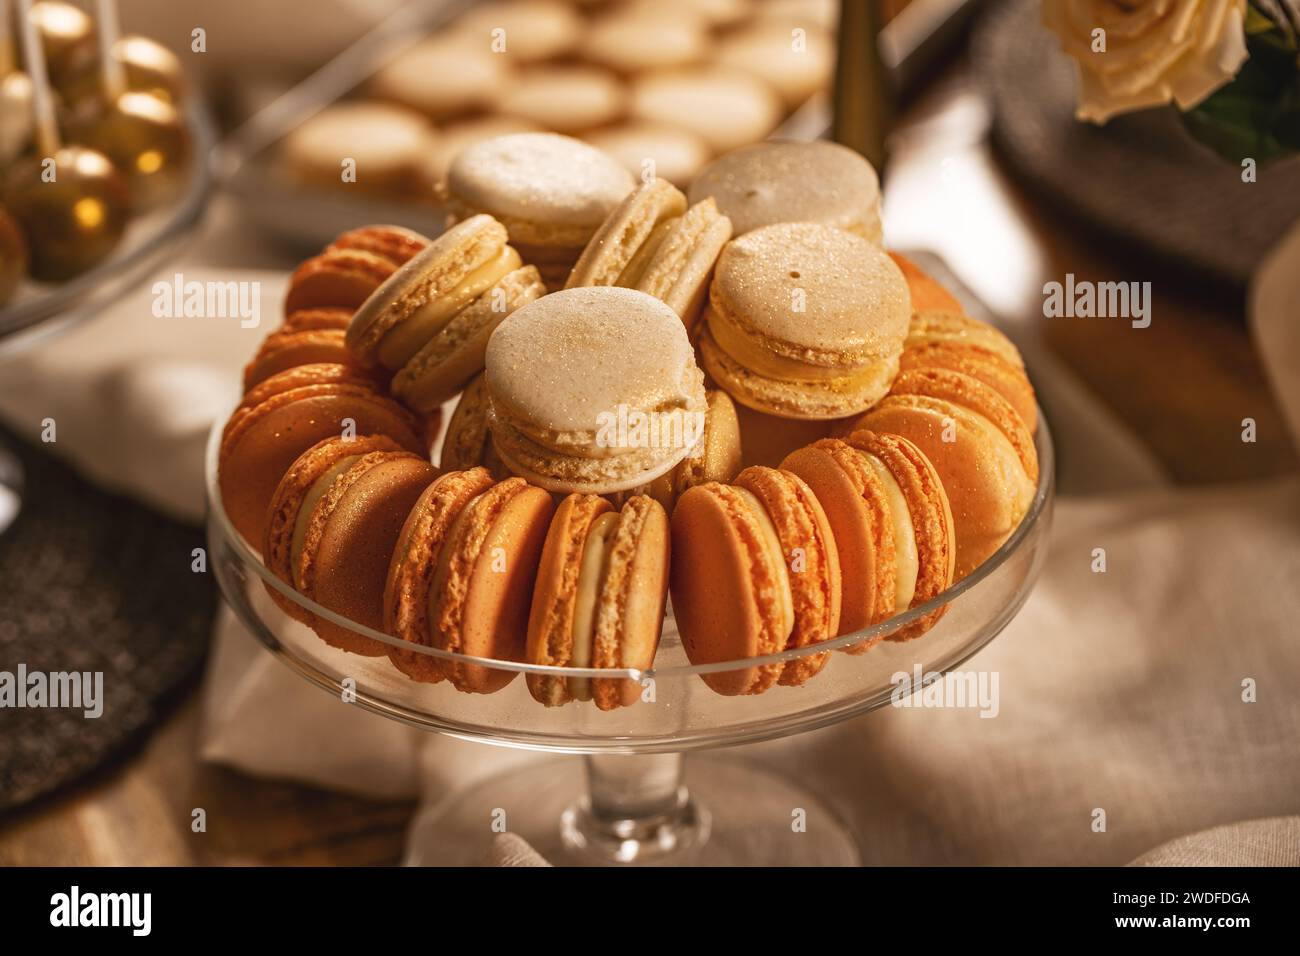 Macarons de couleur pastel dans un élégant bol en verre sur une table sucrée Banque D'Images